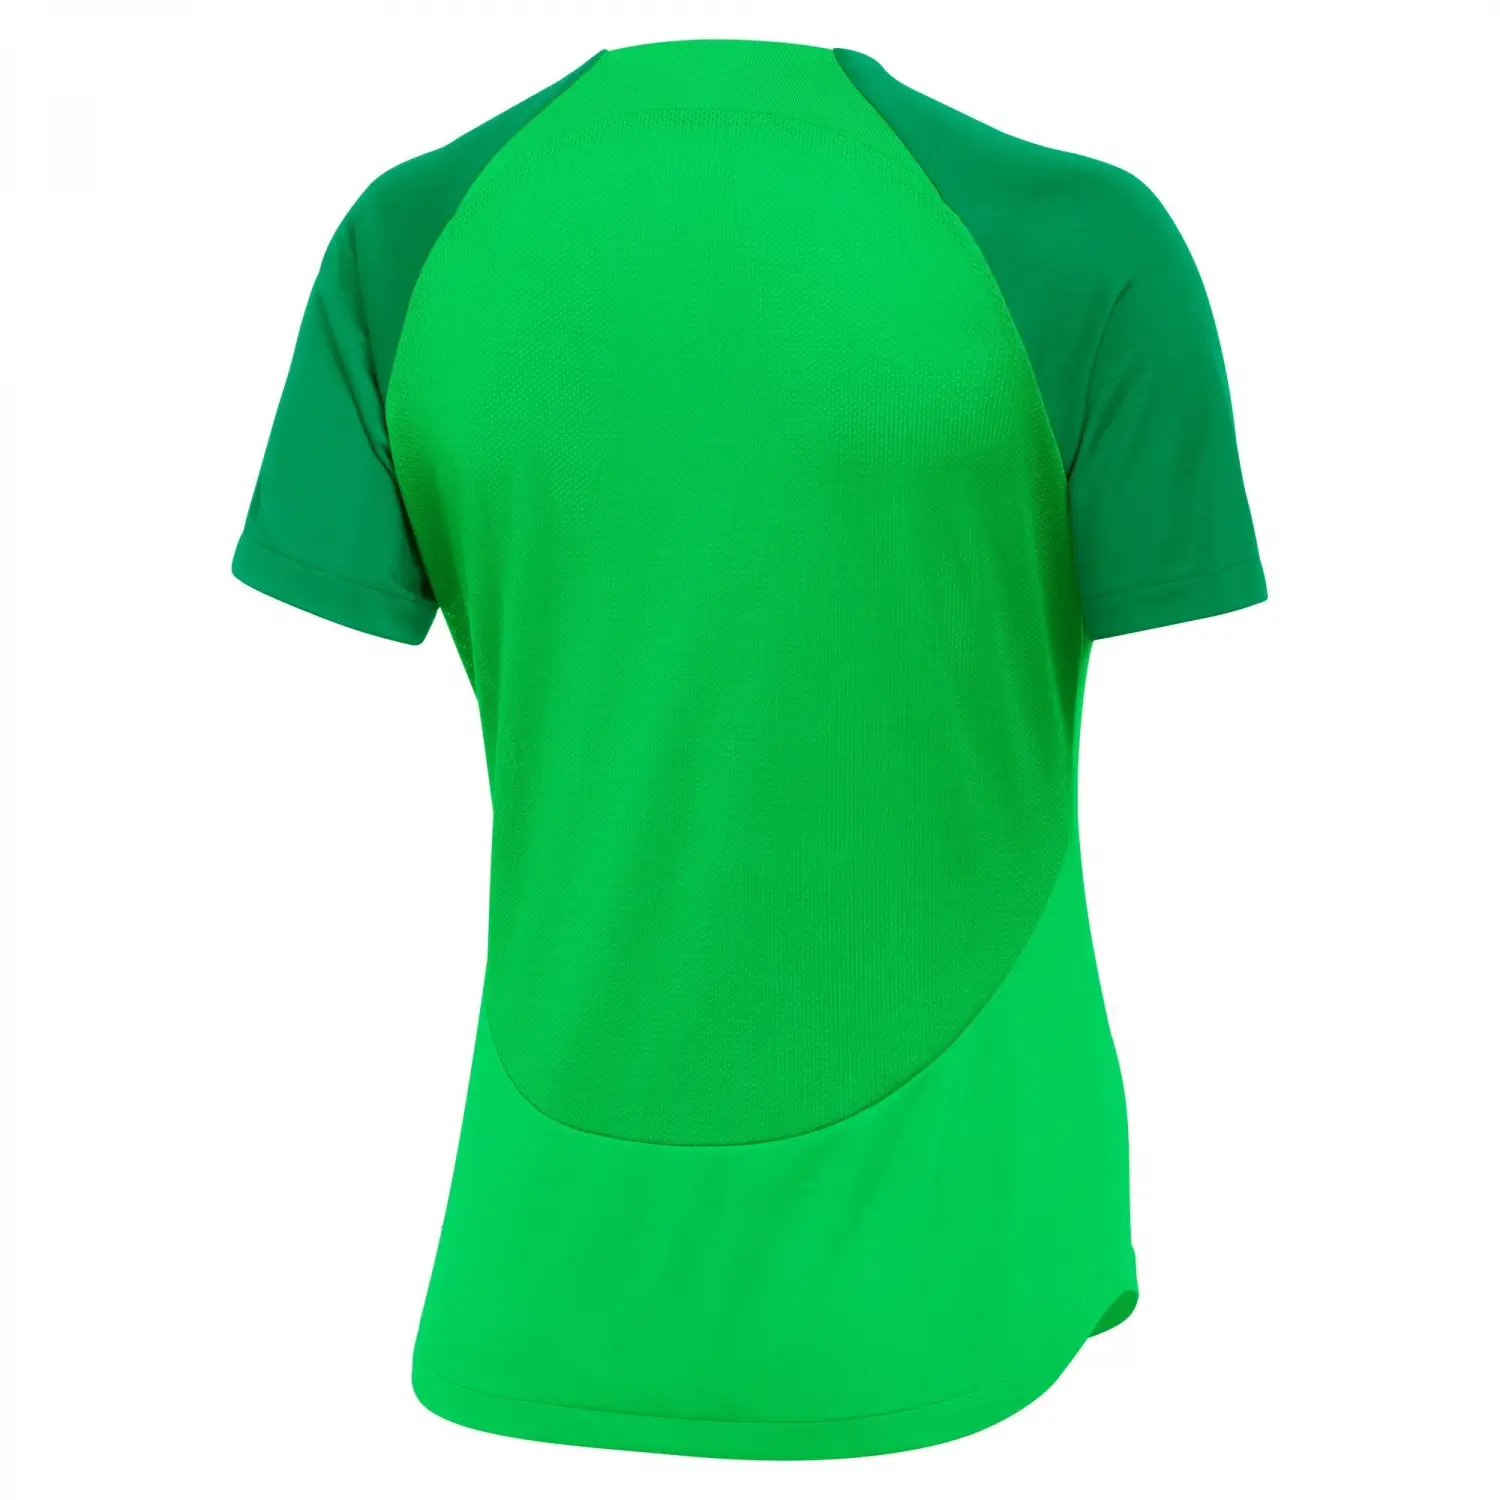 Nike Dri-FIT Academy Pro Yeşil Kadın Tişört DH9242-329